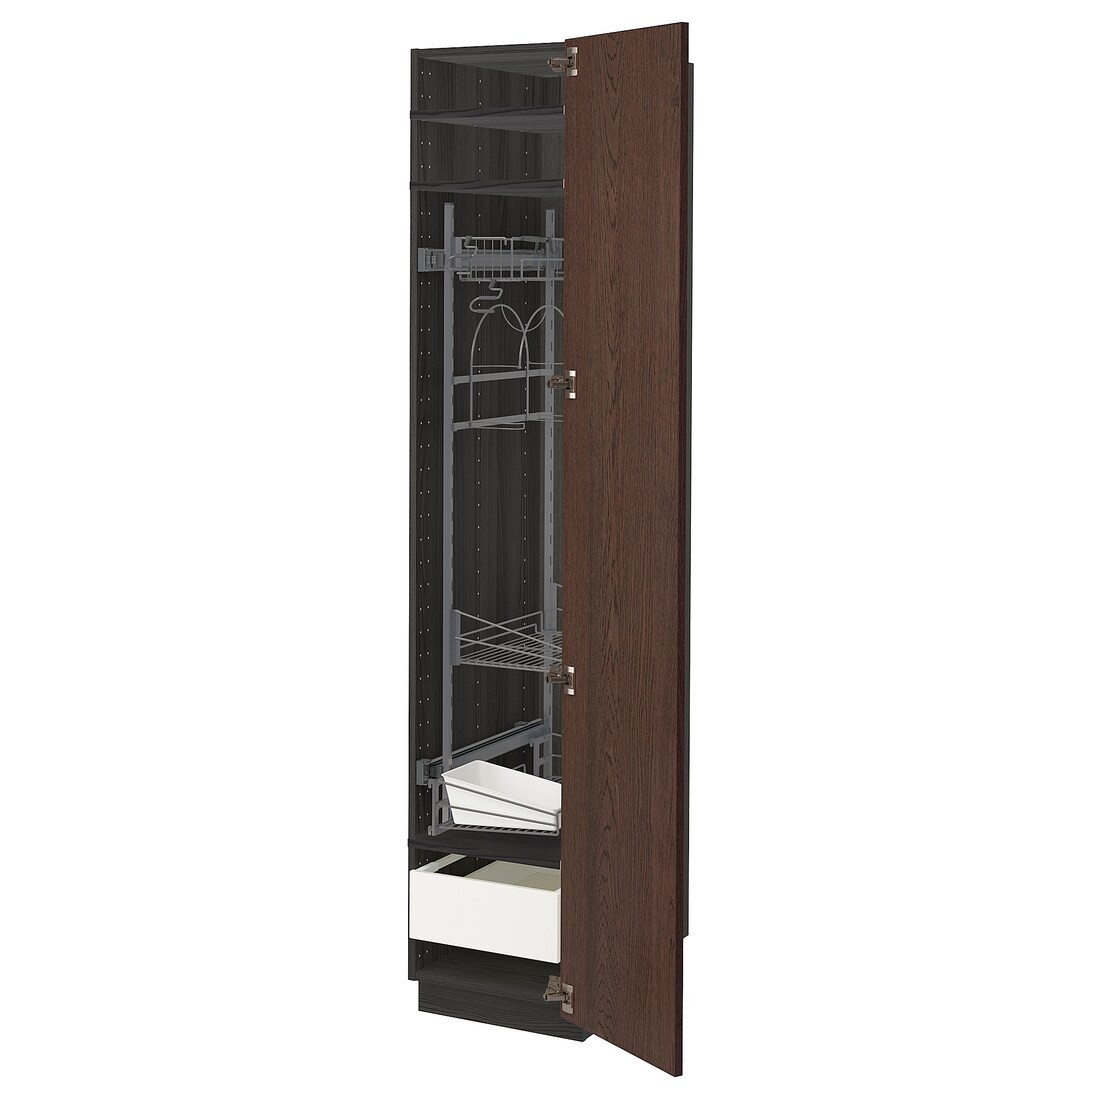 METOD МЕТОД / MAXIMERA МАКСИМЕРА Высокий шкаф с отделением для аксессуаров для уборки, черный / Sinarp коричневый, 40x60x200 см